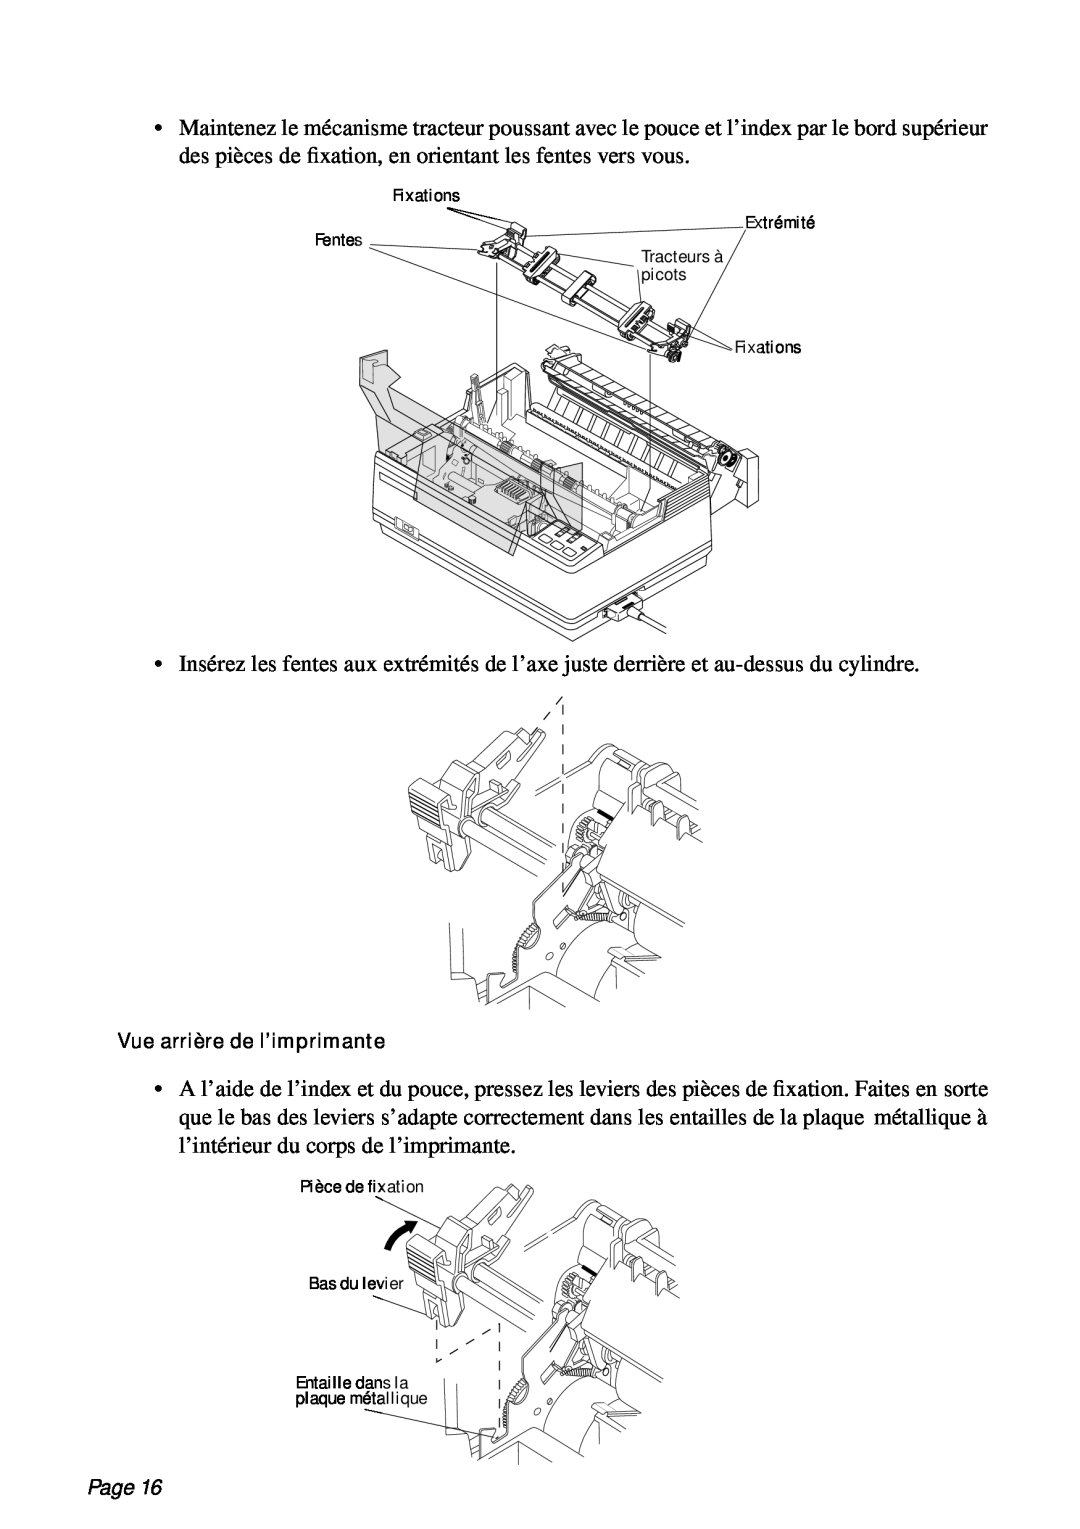 Star Micronics PT-10Q user manual l’intérieur du corps de l’imprimante, Page 